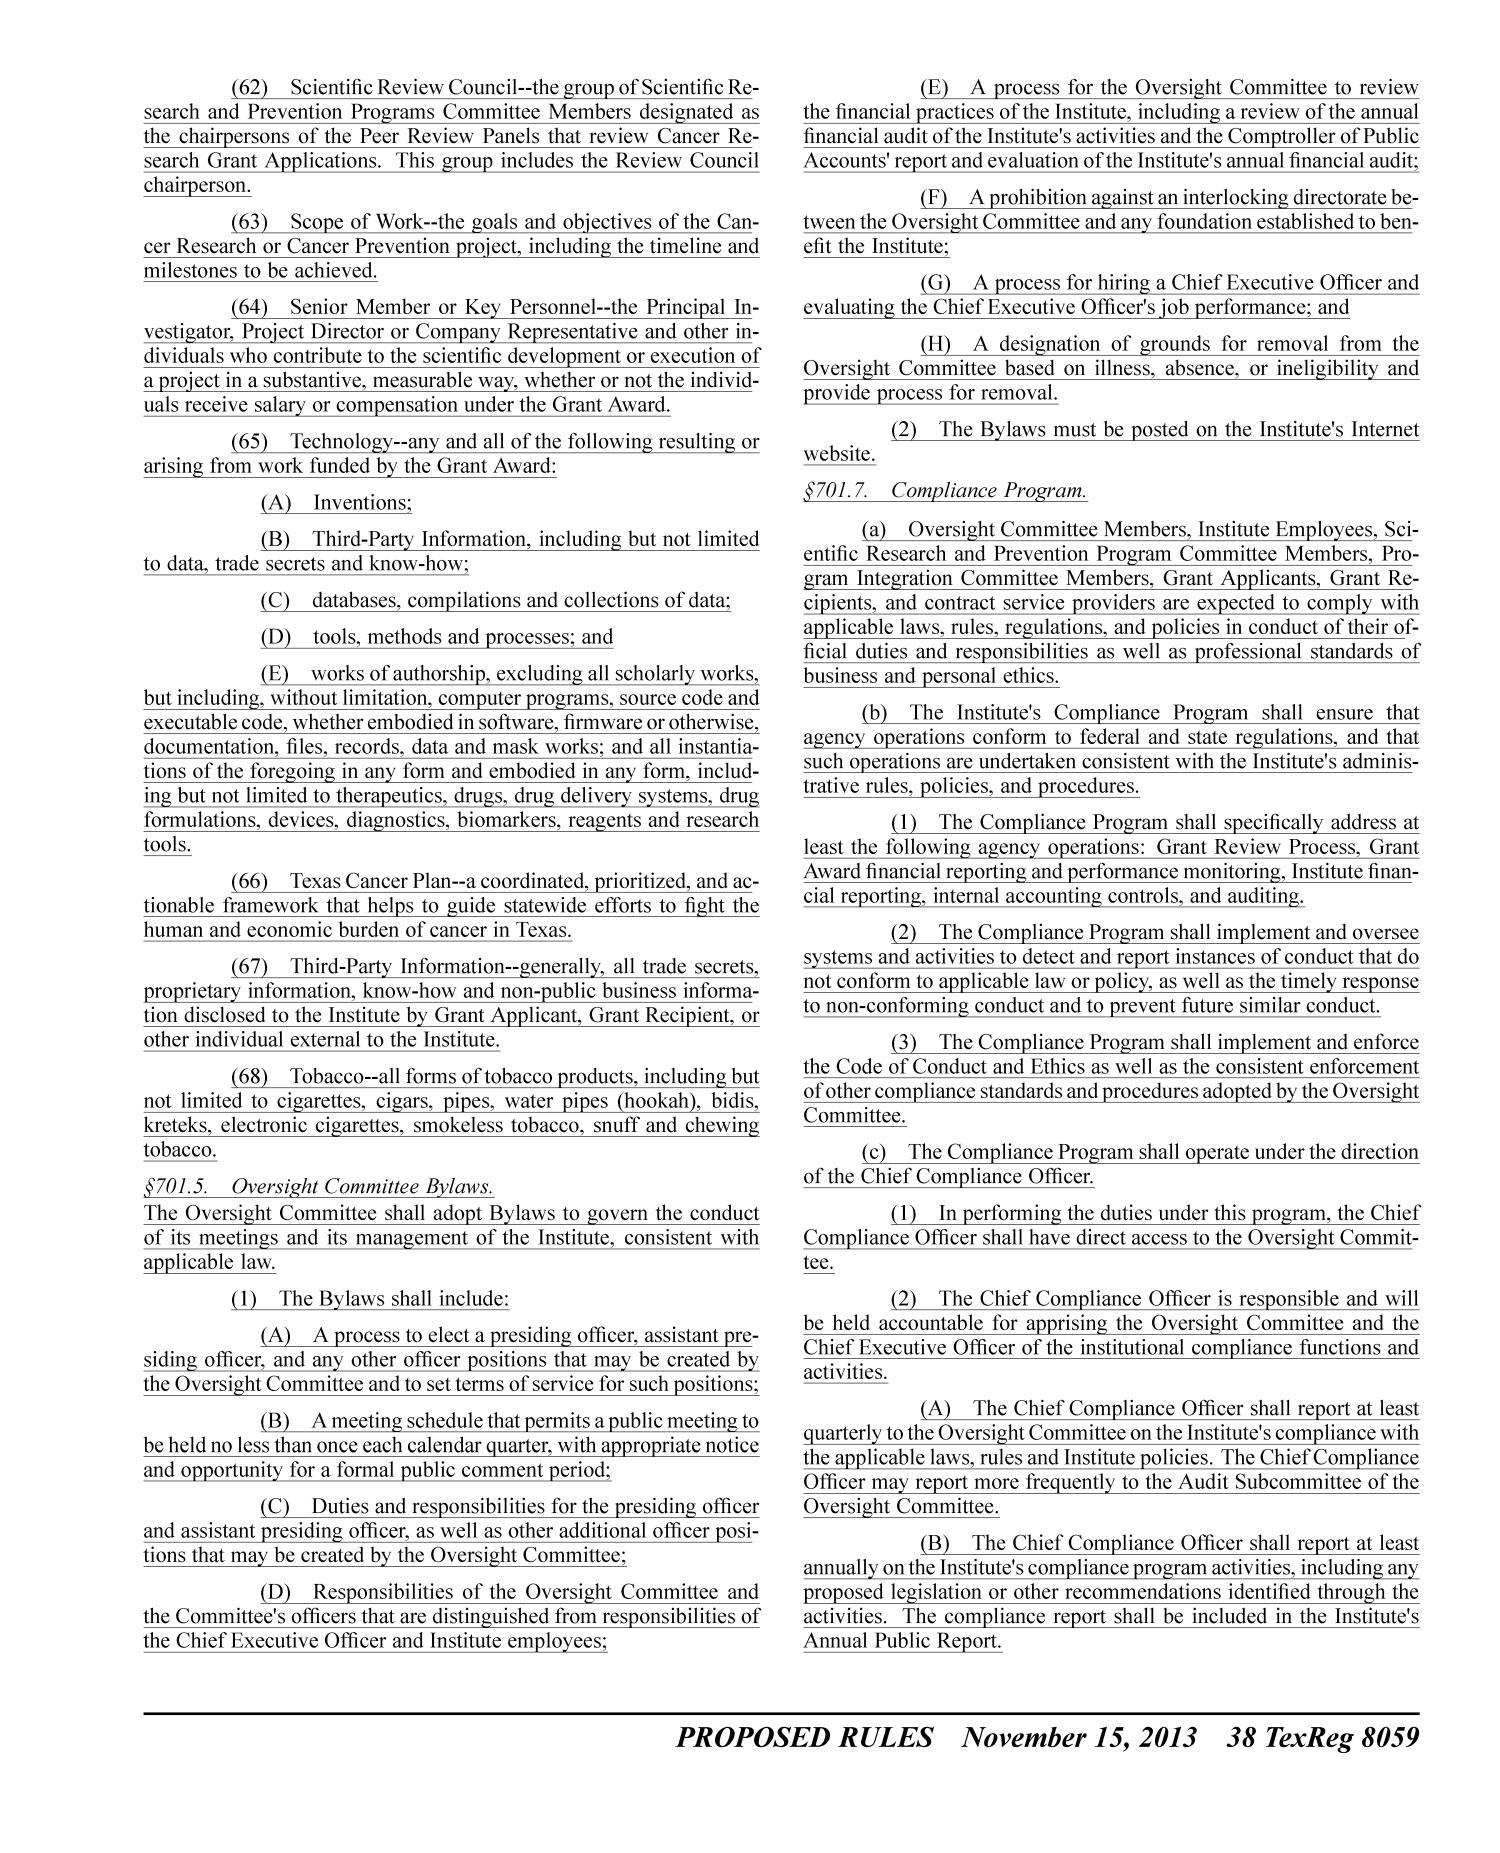 Texas Register, Volume 38, Number 46, Pages 8023-8312, November 15, 2013
                                                
                                                    8059
                                                